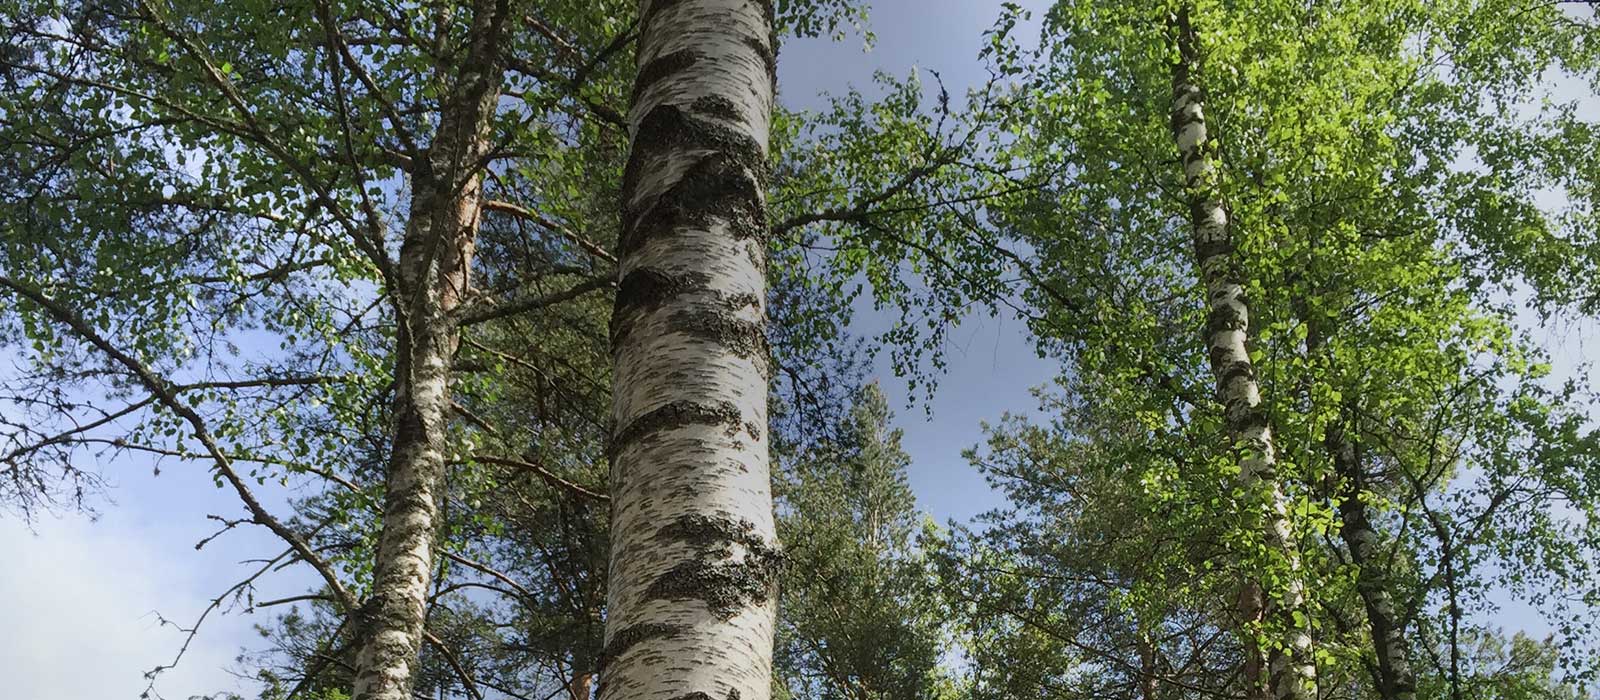 Suomen kaksi koivulajia, hieskoivu (Betula punescnes) ja rauduskoivu (Betula pendula), kasvavat Suomessa aina Kittilän korkeudelle asti.